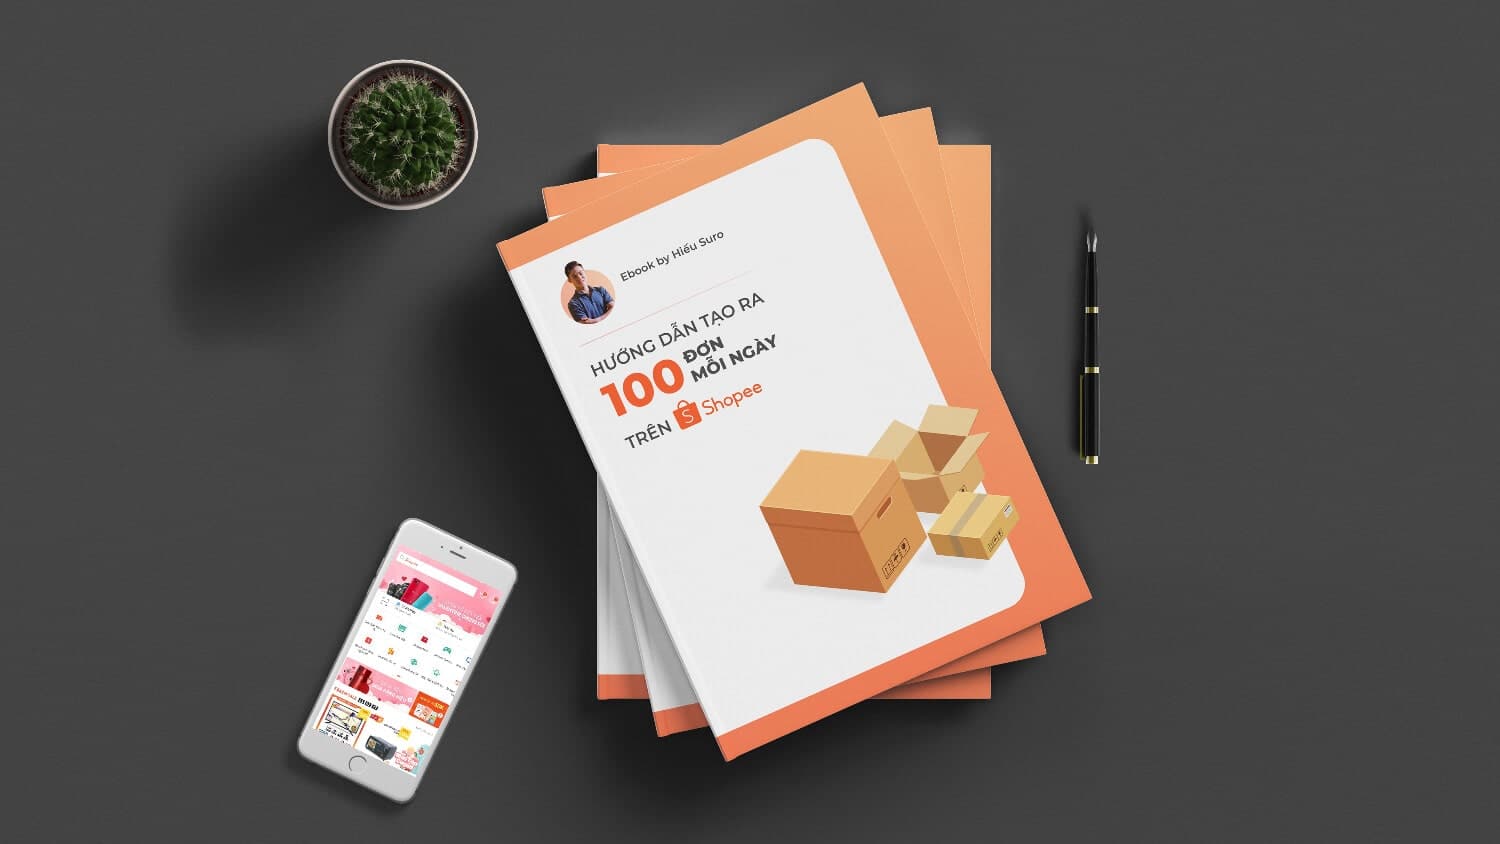 Ebook: cách tạo ra 100 đơn hàng mỗi ngày trên Shopee